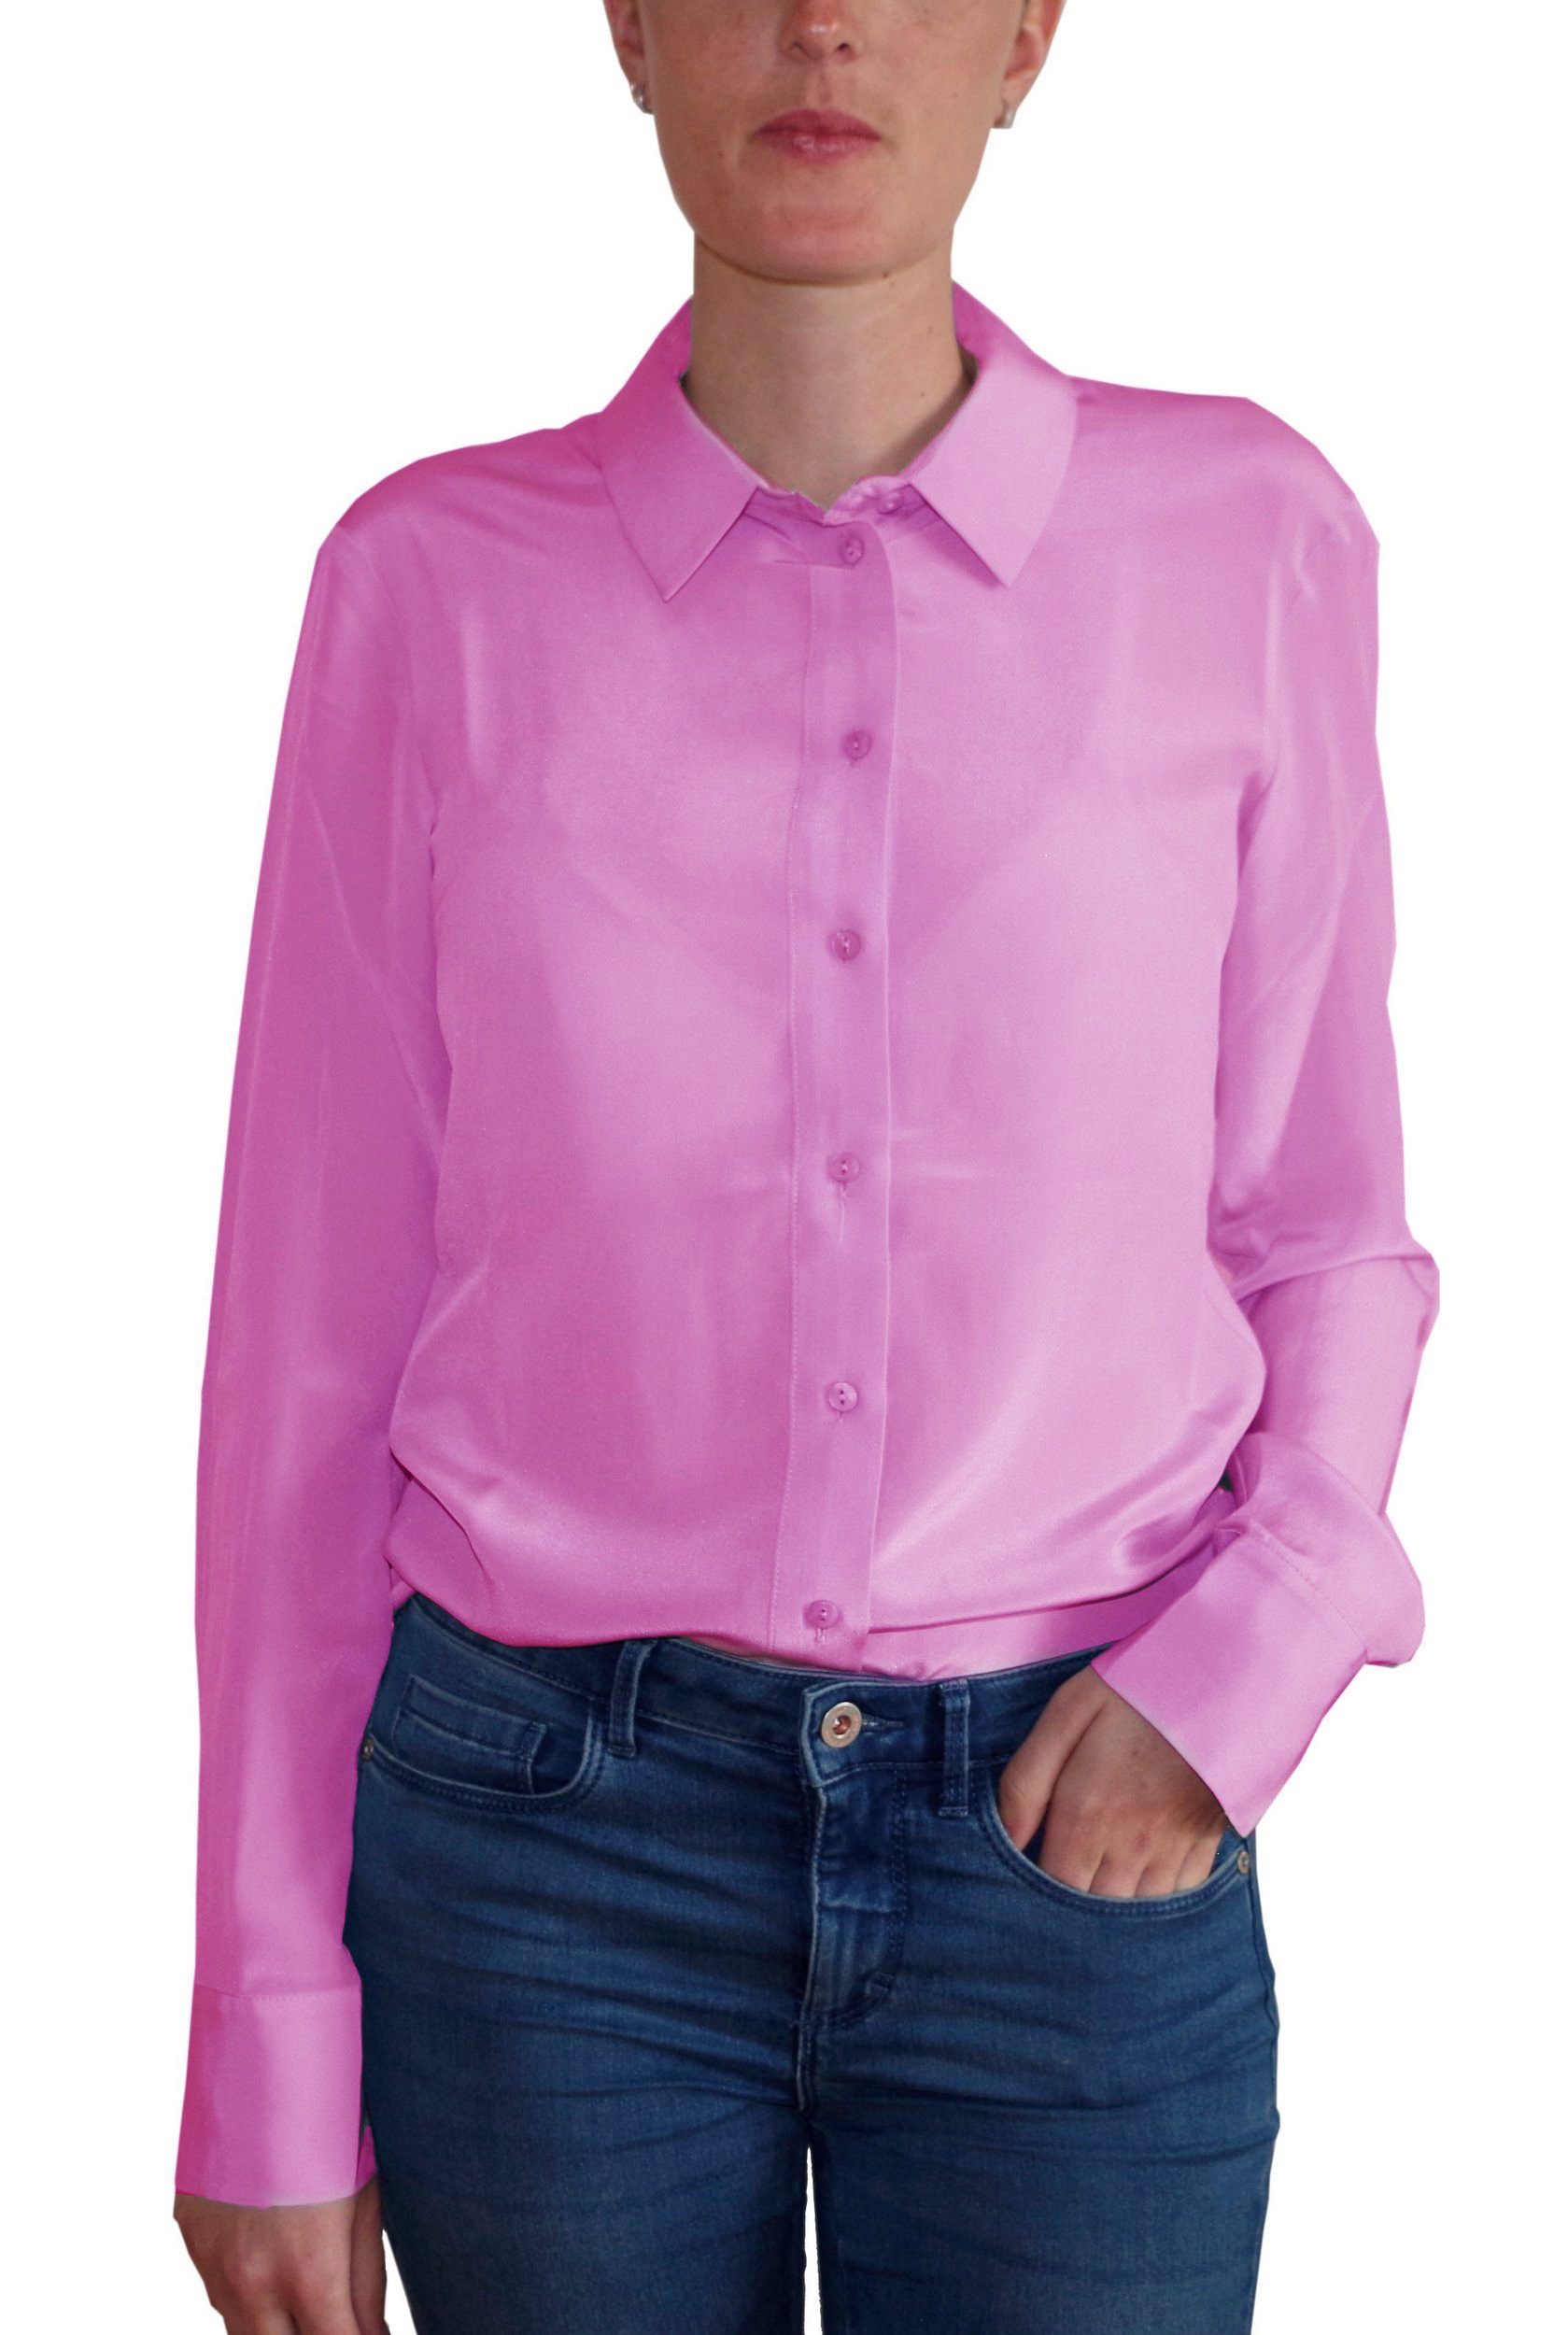 Rosa Seide Blusen für Damen kaufen » Pinke Seide Blusen | OTTO